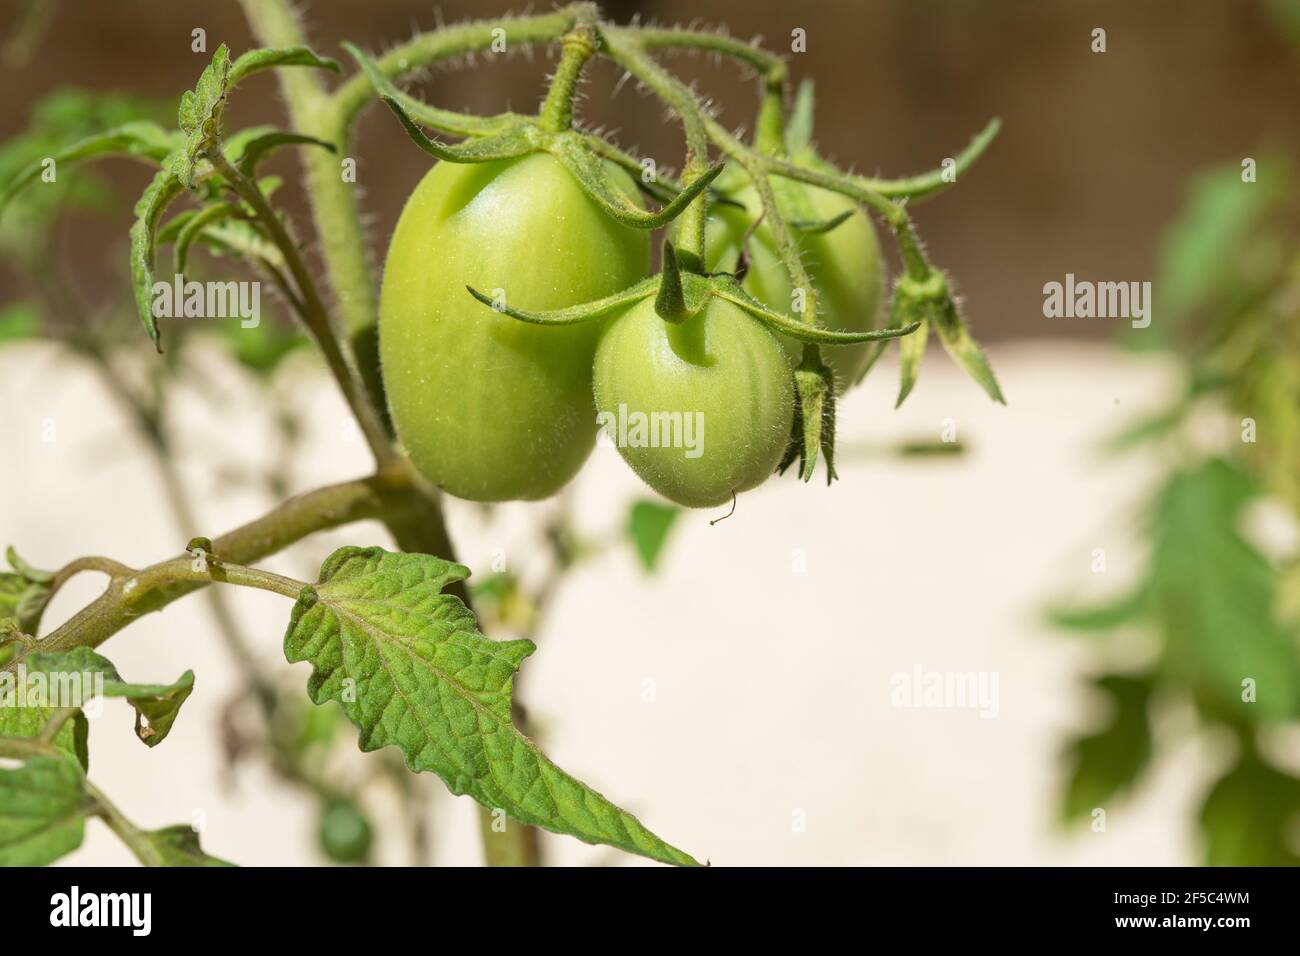 fresh growing tomatoes (Solanum lycopersicum) Stock Photo